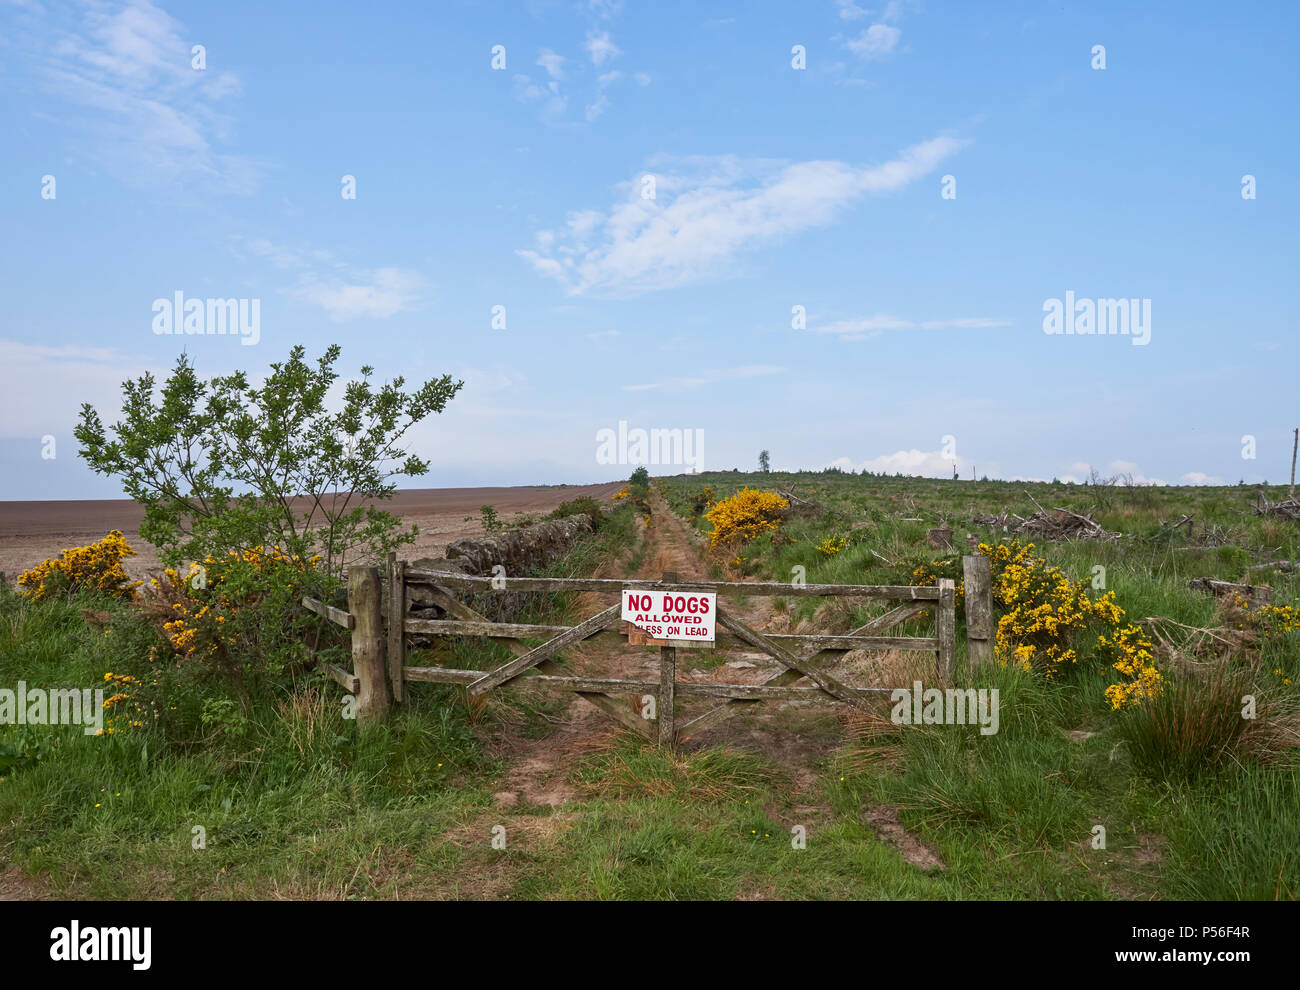 Einer der vielen Wanderwege, die Karotte Hill in der Nähe von Forfar in Angus, Schottland führen. Dieses hat ein Tor mit einem Hunde an der Leine zu unterzeichnen. Stockfoto